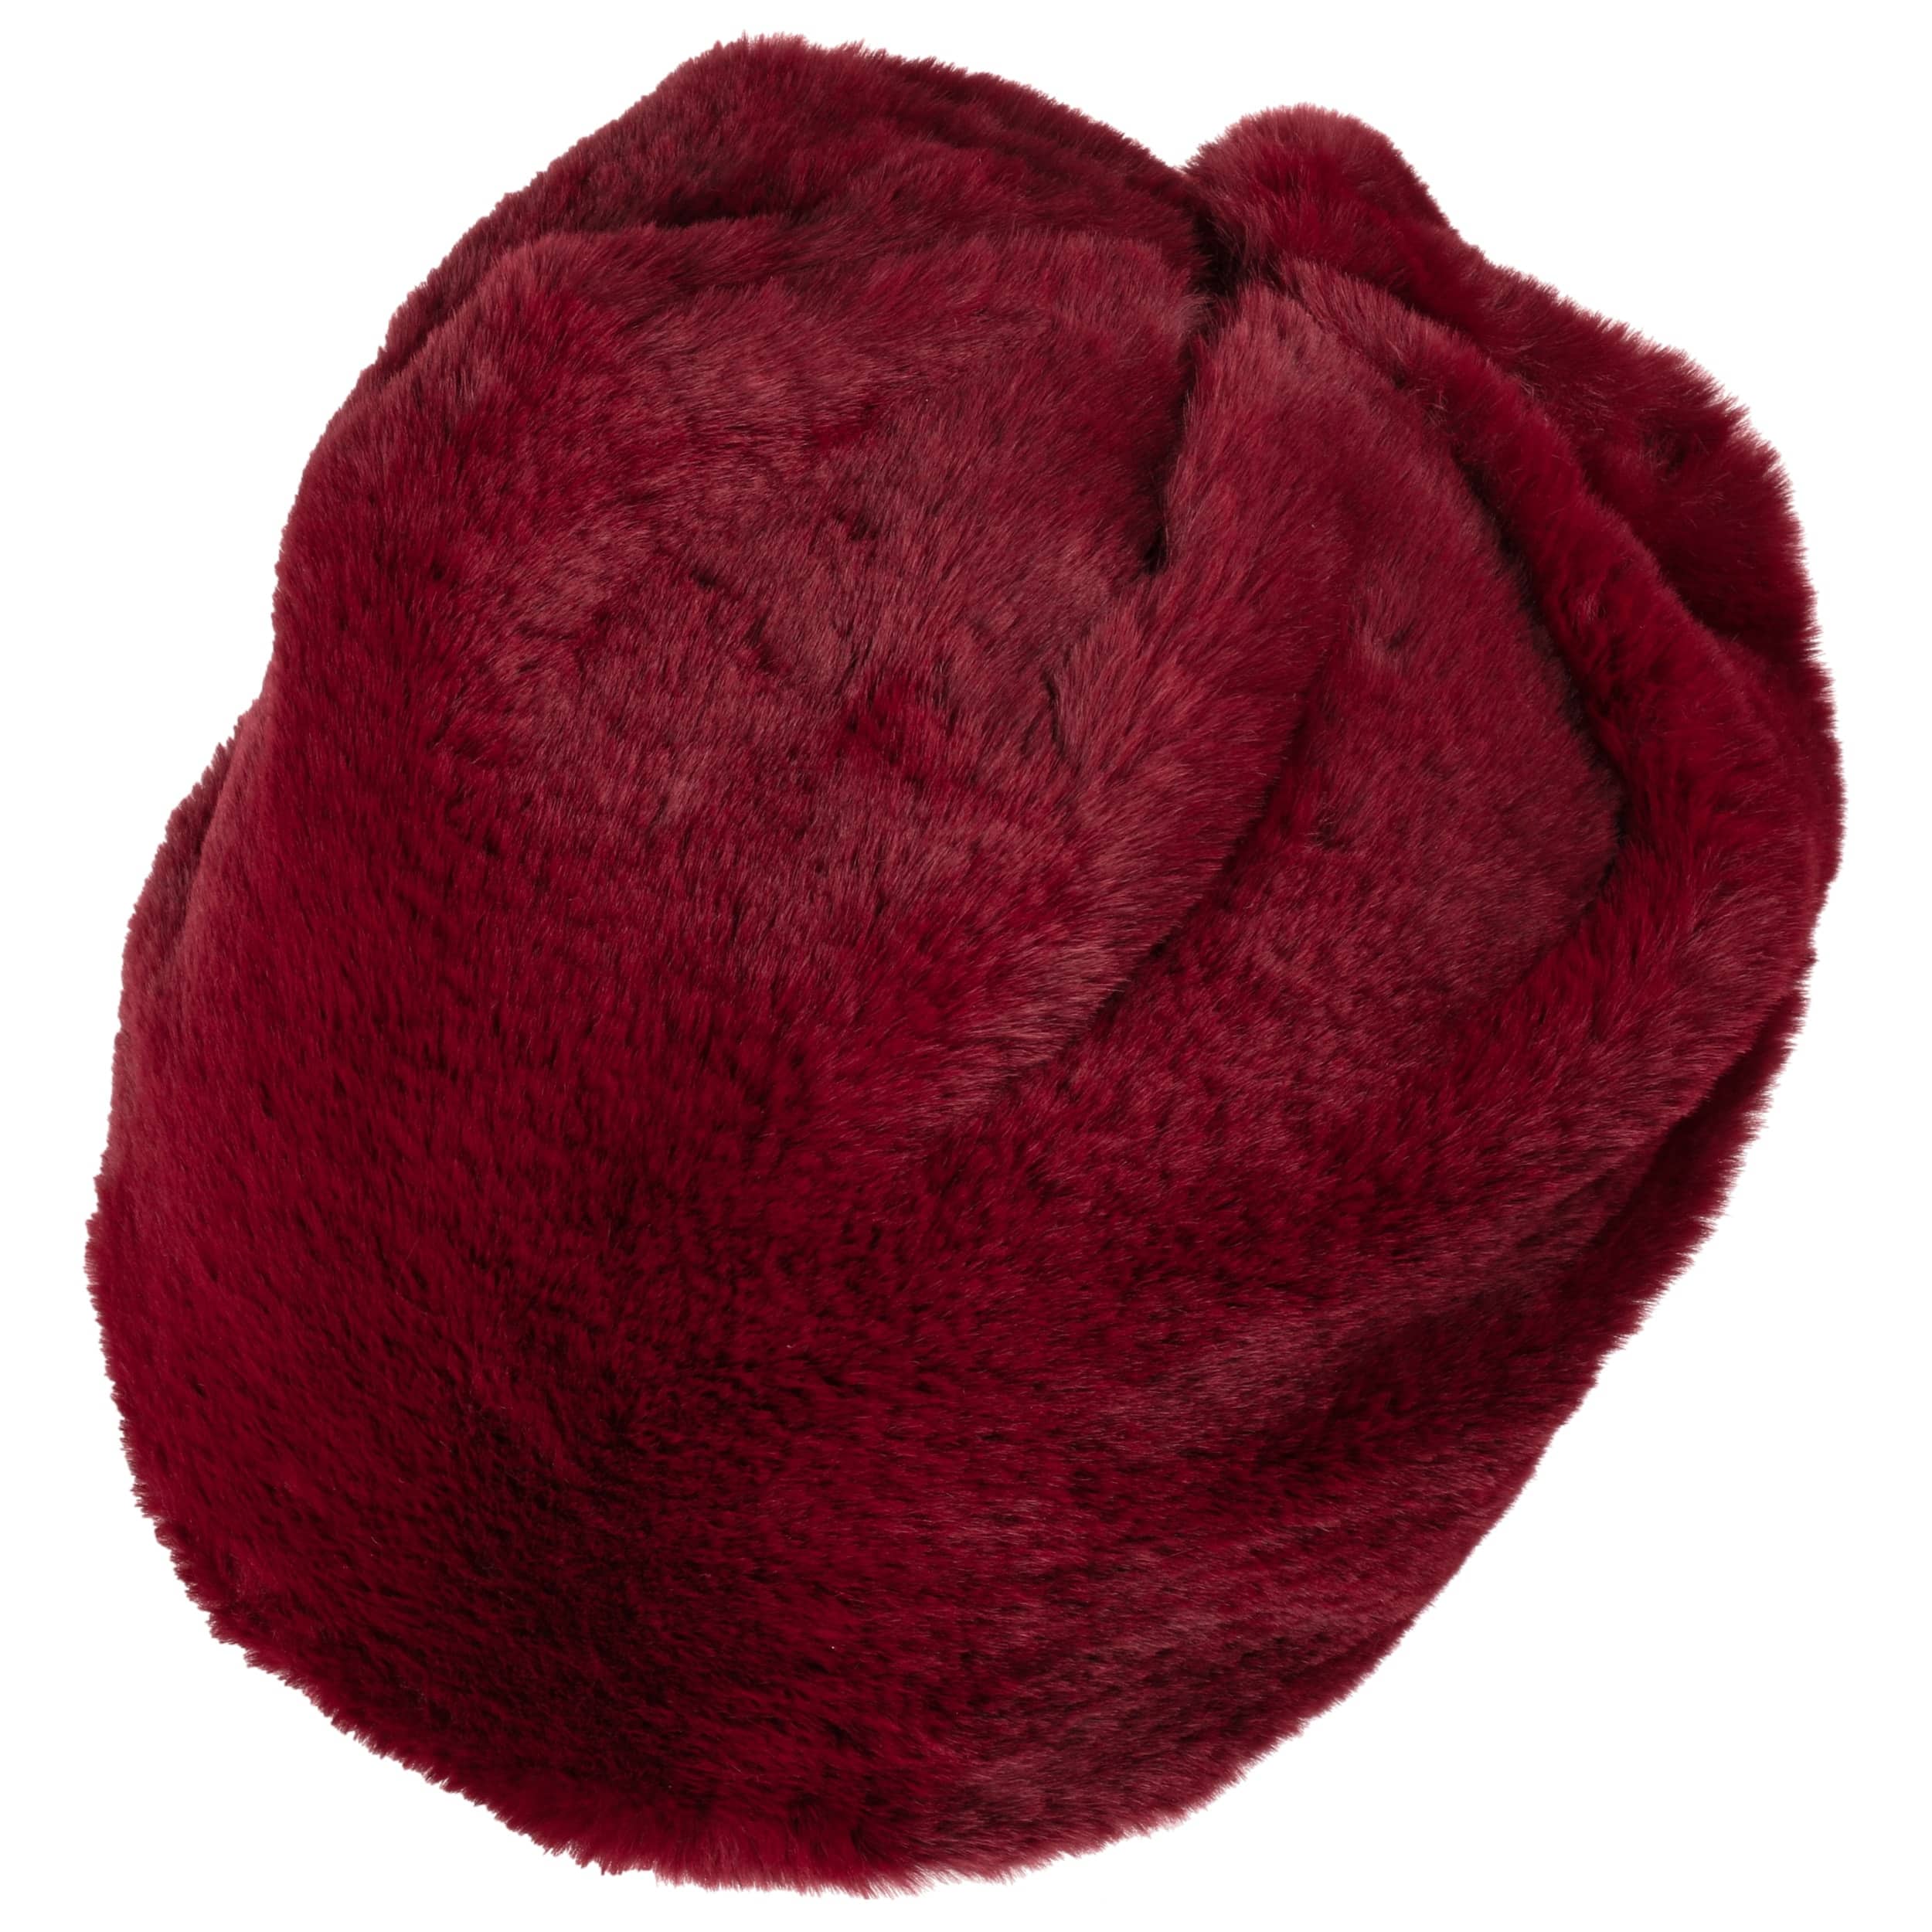 red faux fur hat